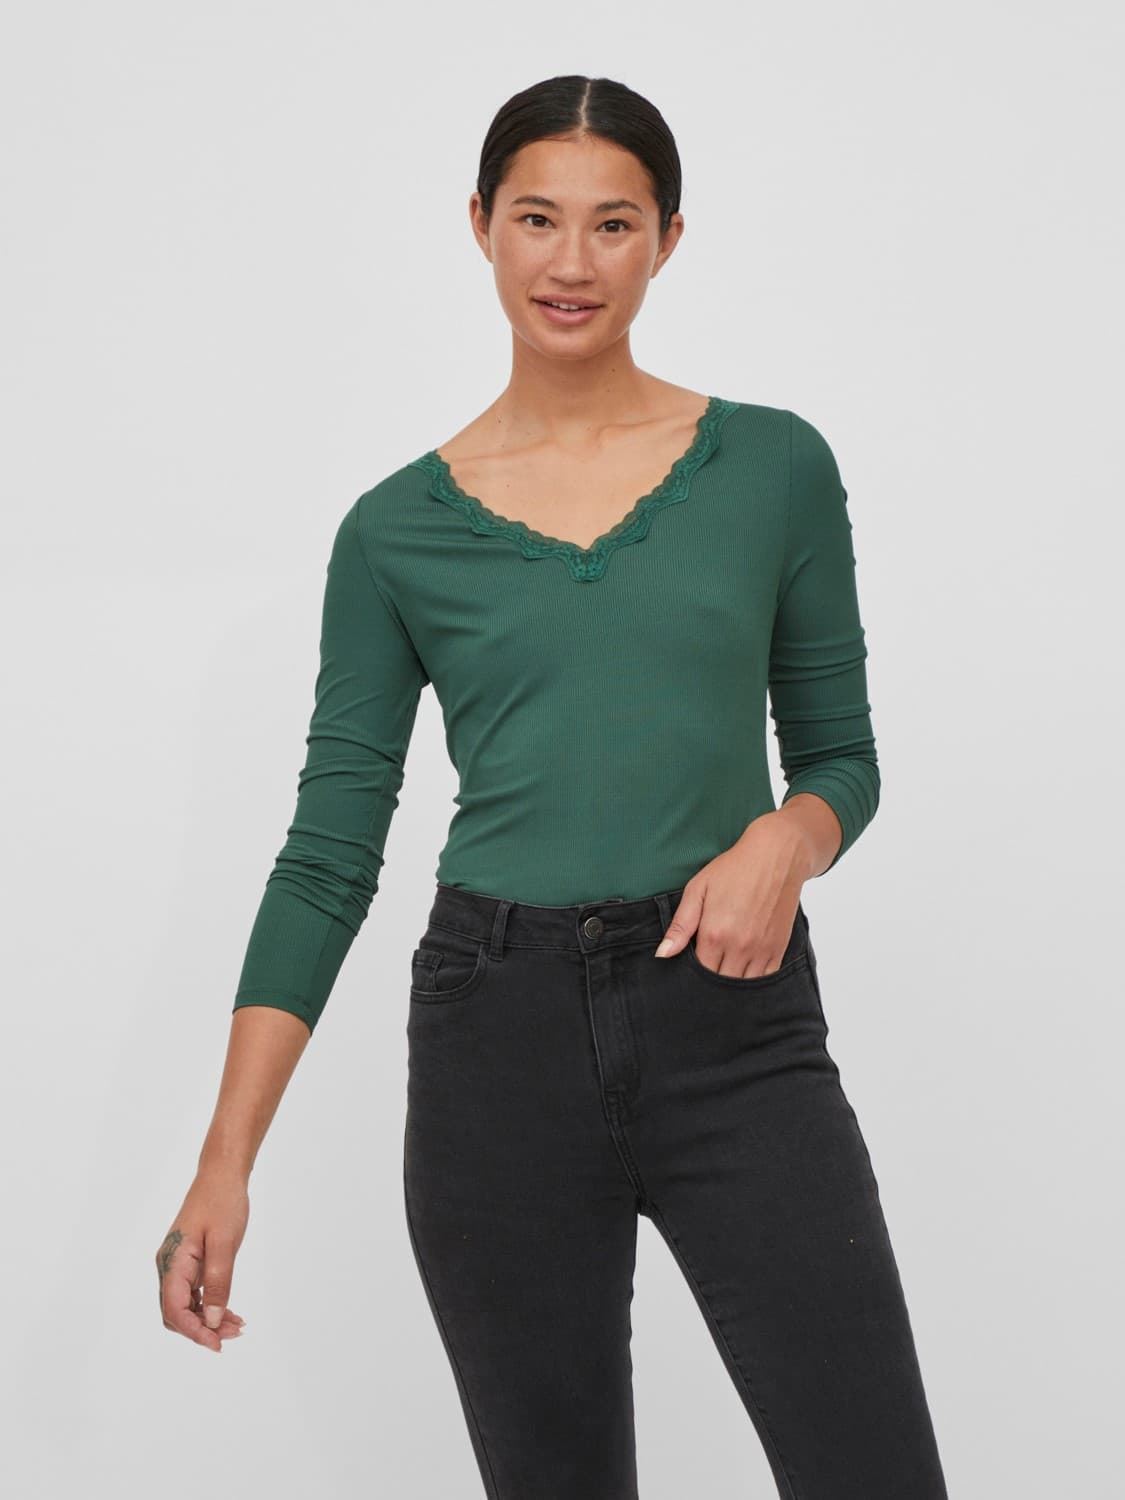 Camiseta verde Vizetty - Imagen 1